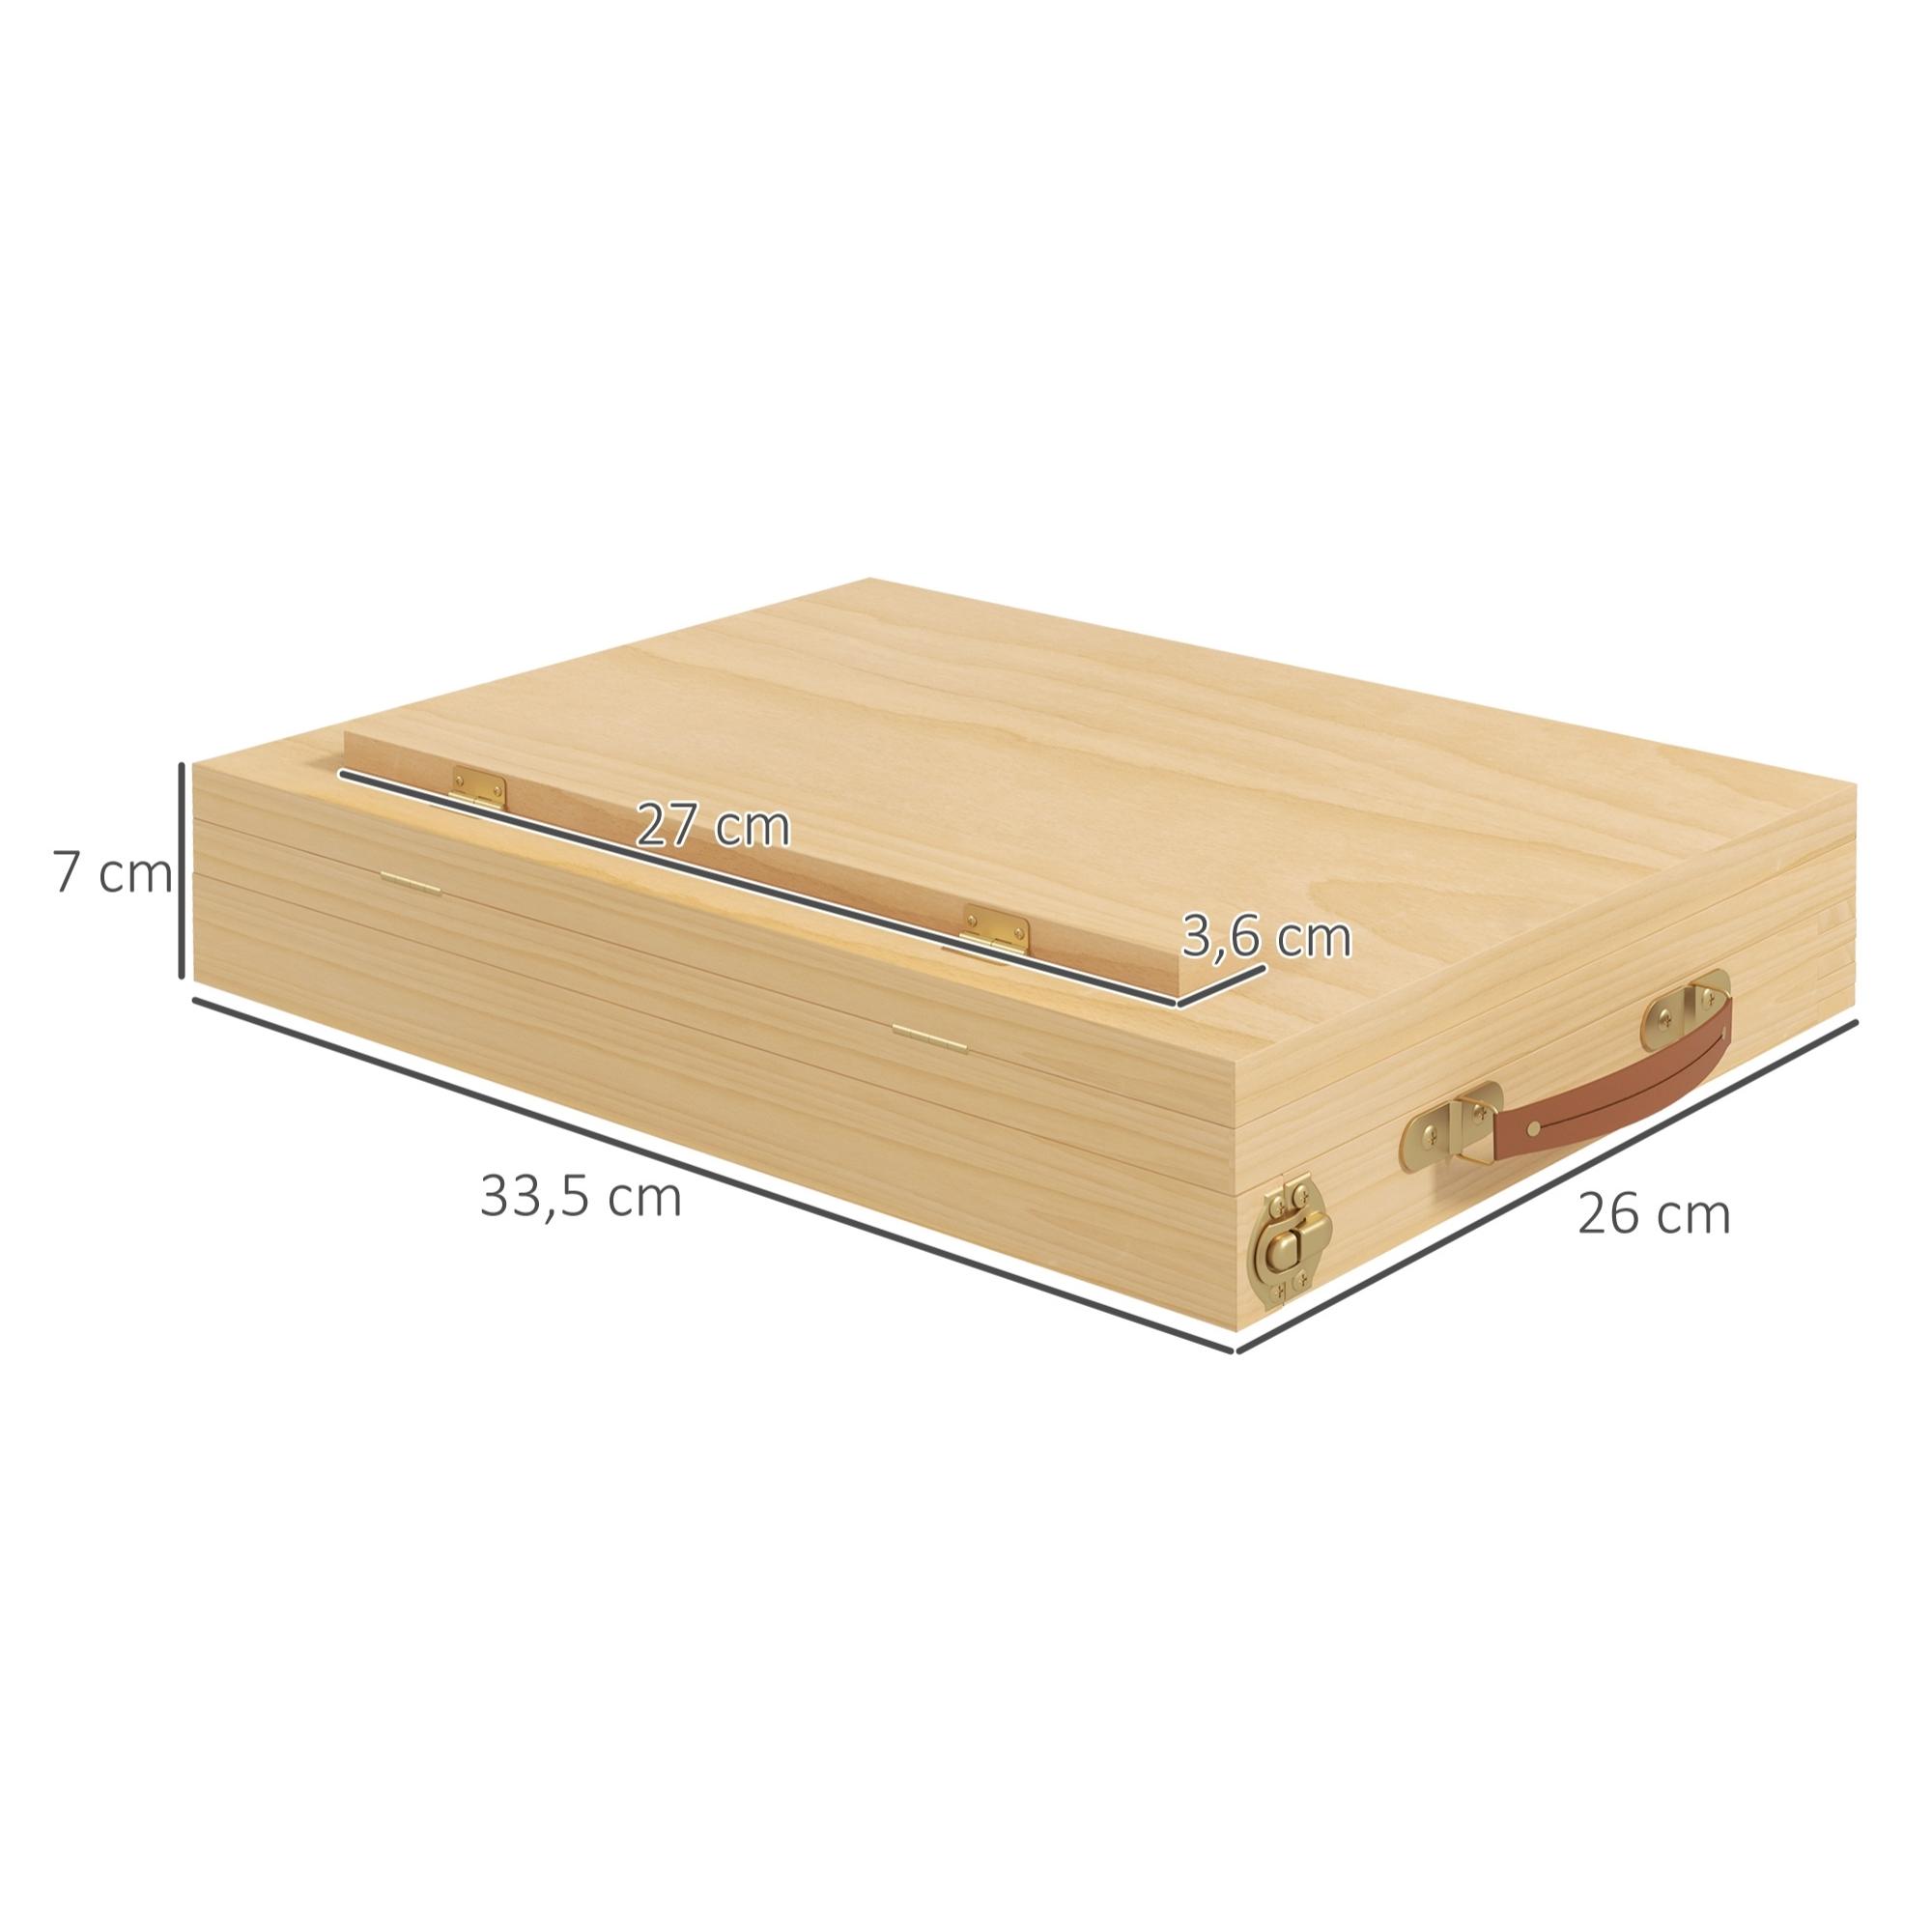 Mallette chevalet professionnel de table inclinaison réglable 3 compartiments de rangement bois de hêtre